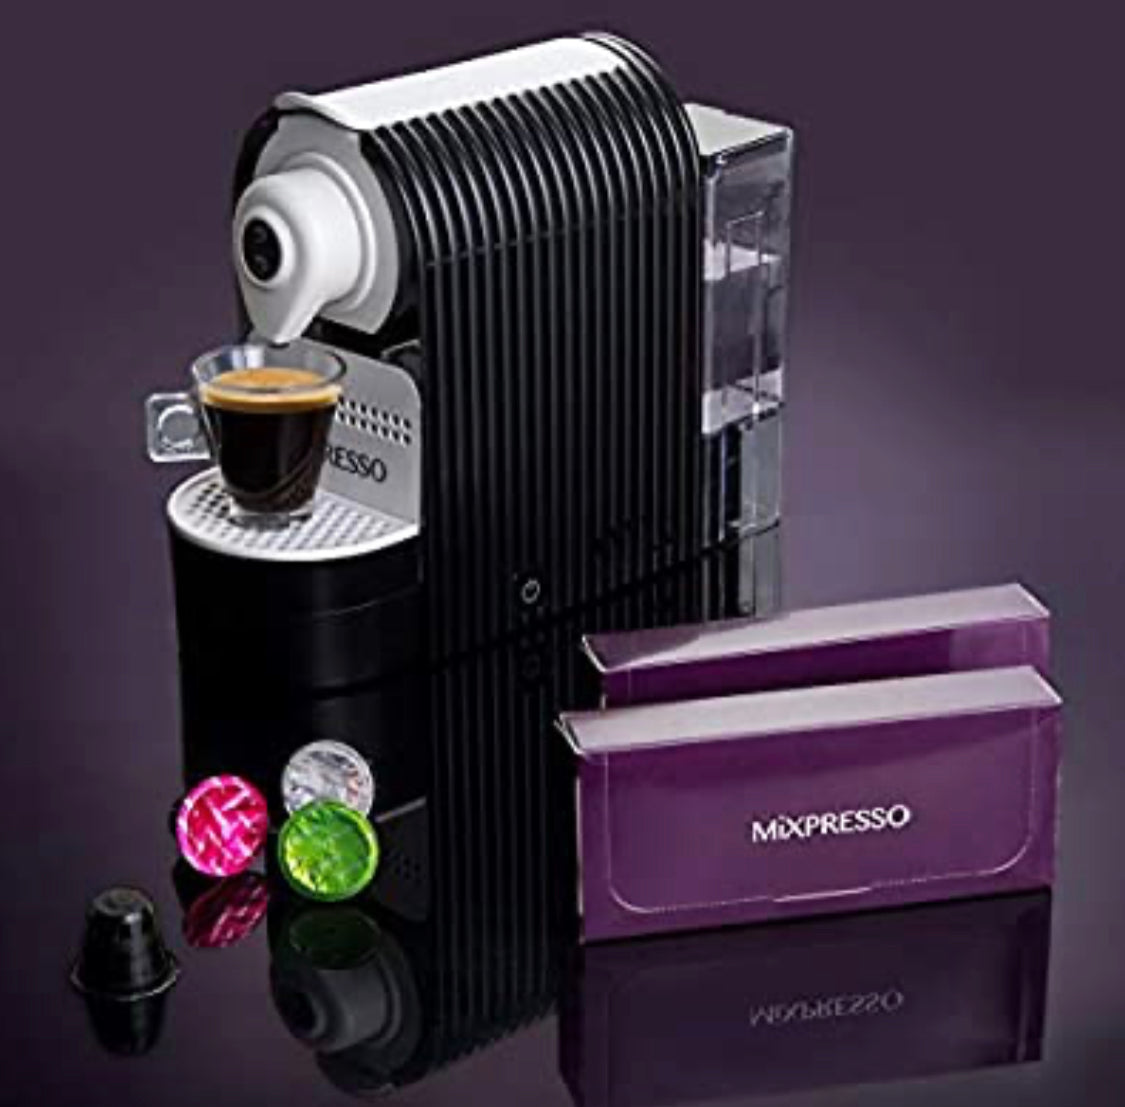 Mixpresso Espresso Machine for Nespresso Compatible Capsule, Single Serve Coffee Maker for Espresso Pods (Black)